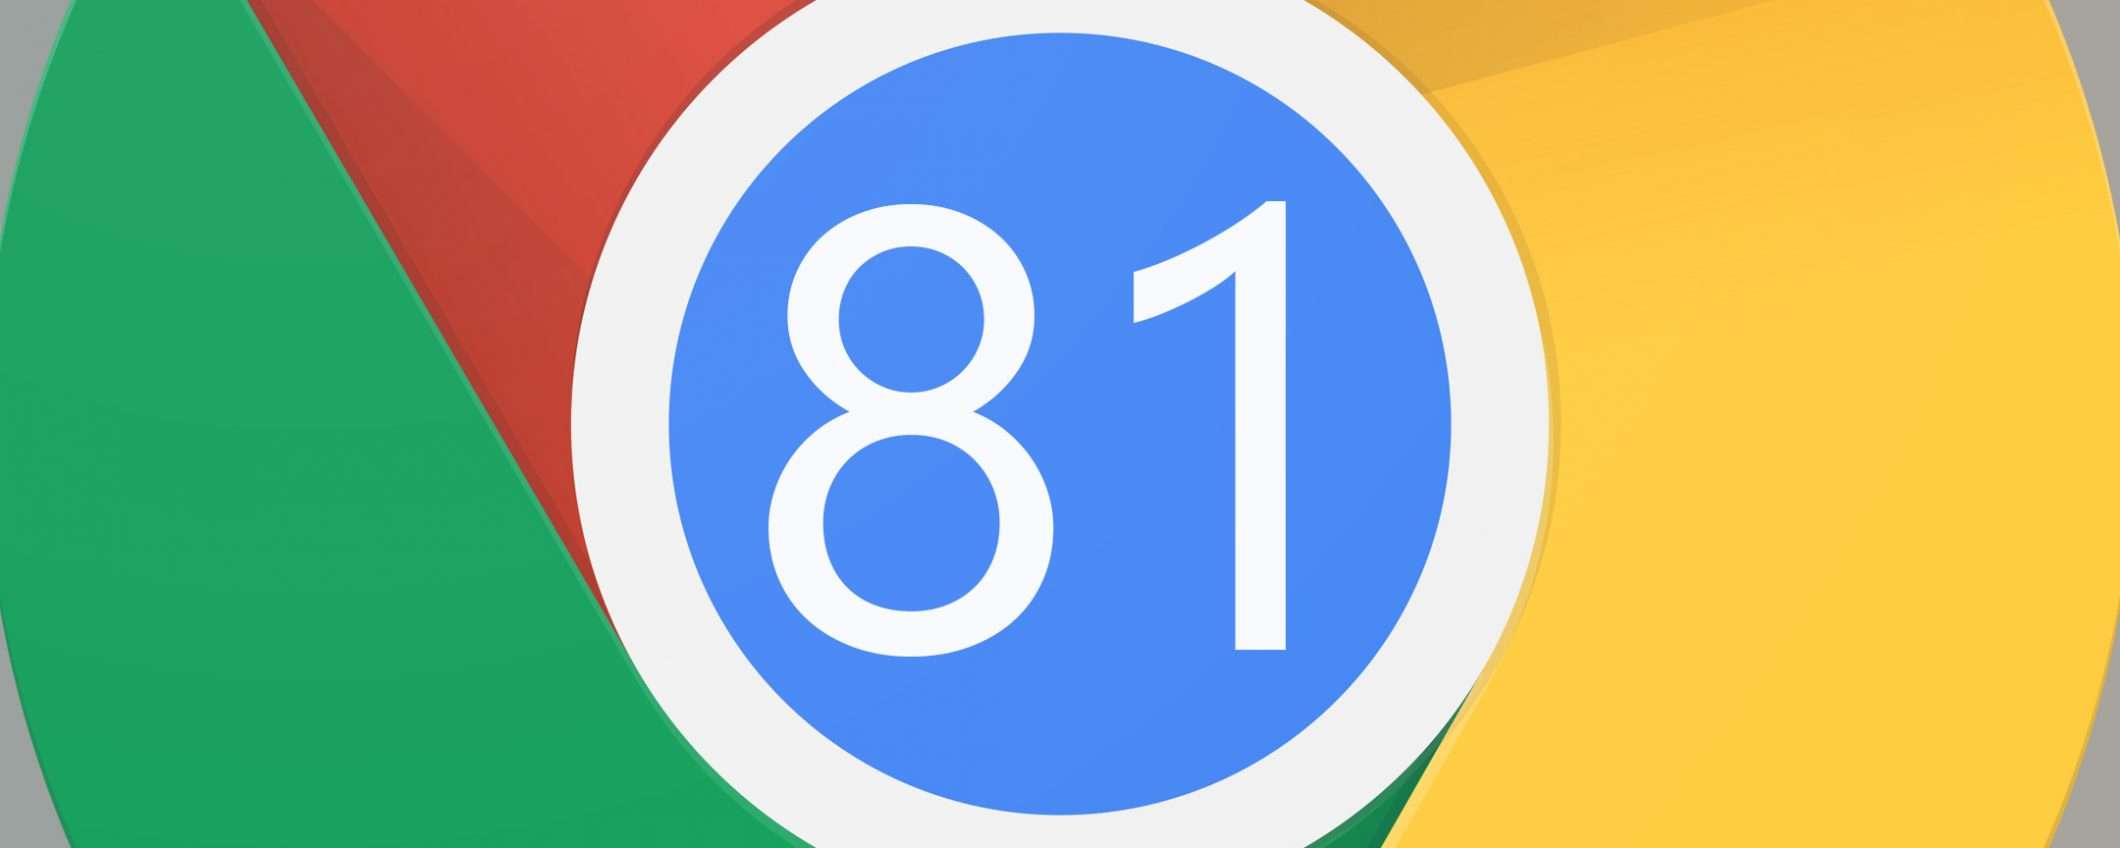 Chrome: si riparte, la versione 81 il 7 aprile